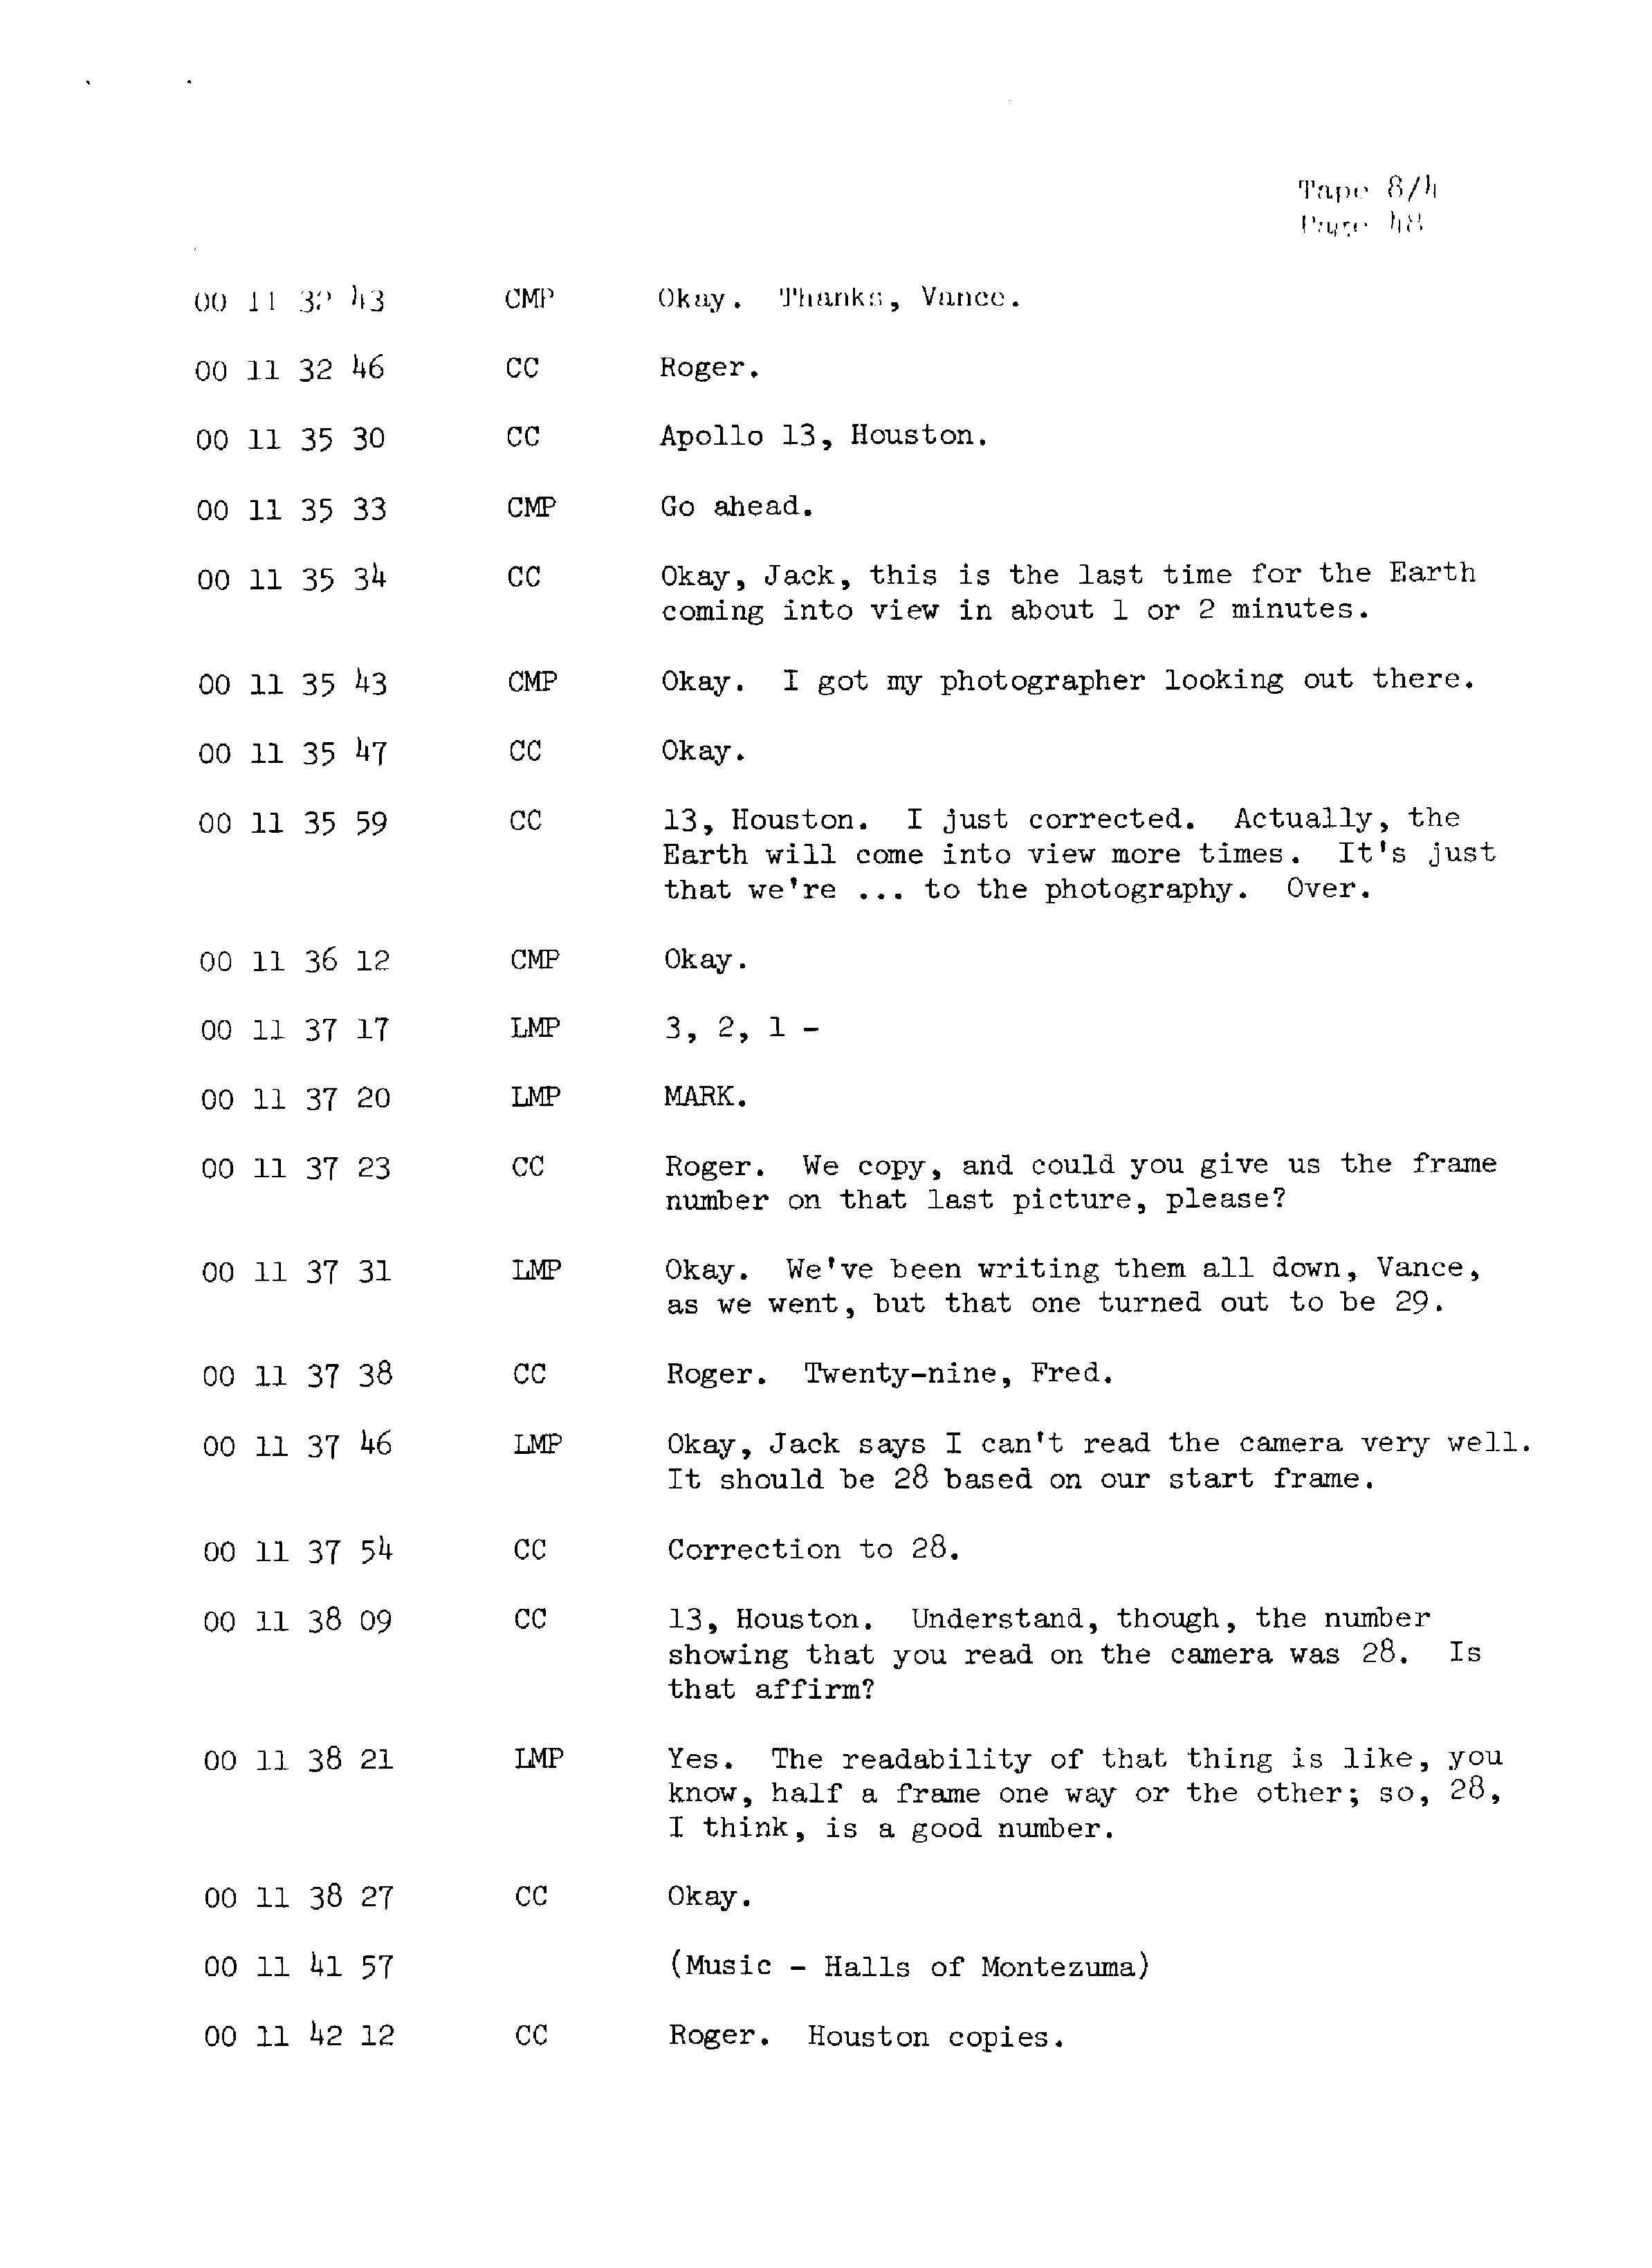 Page 55 of Apollo 13’s original transcript